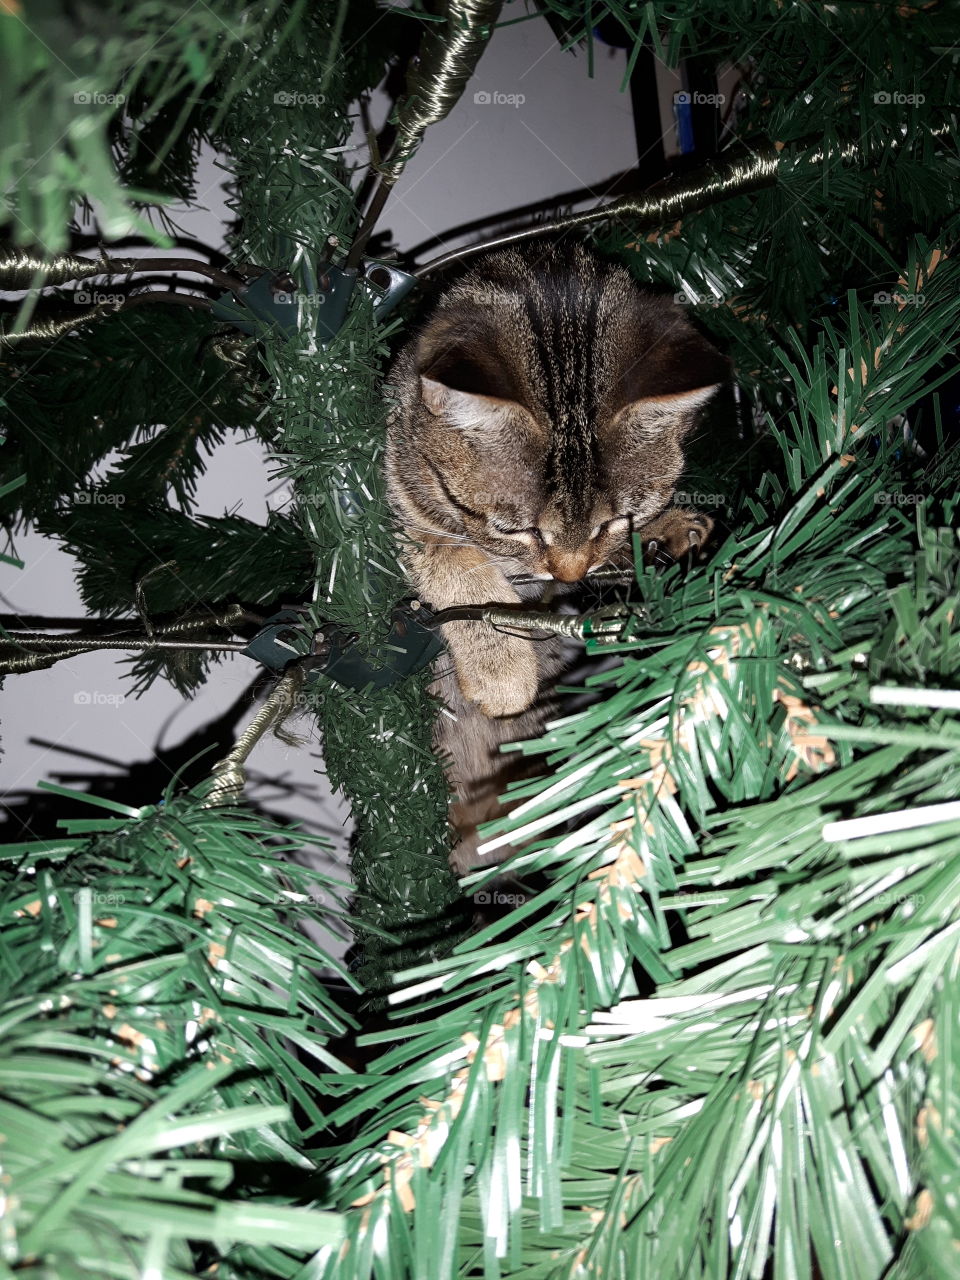 ~Curiosando nell'albero~